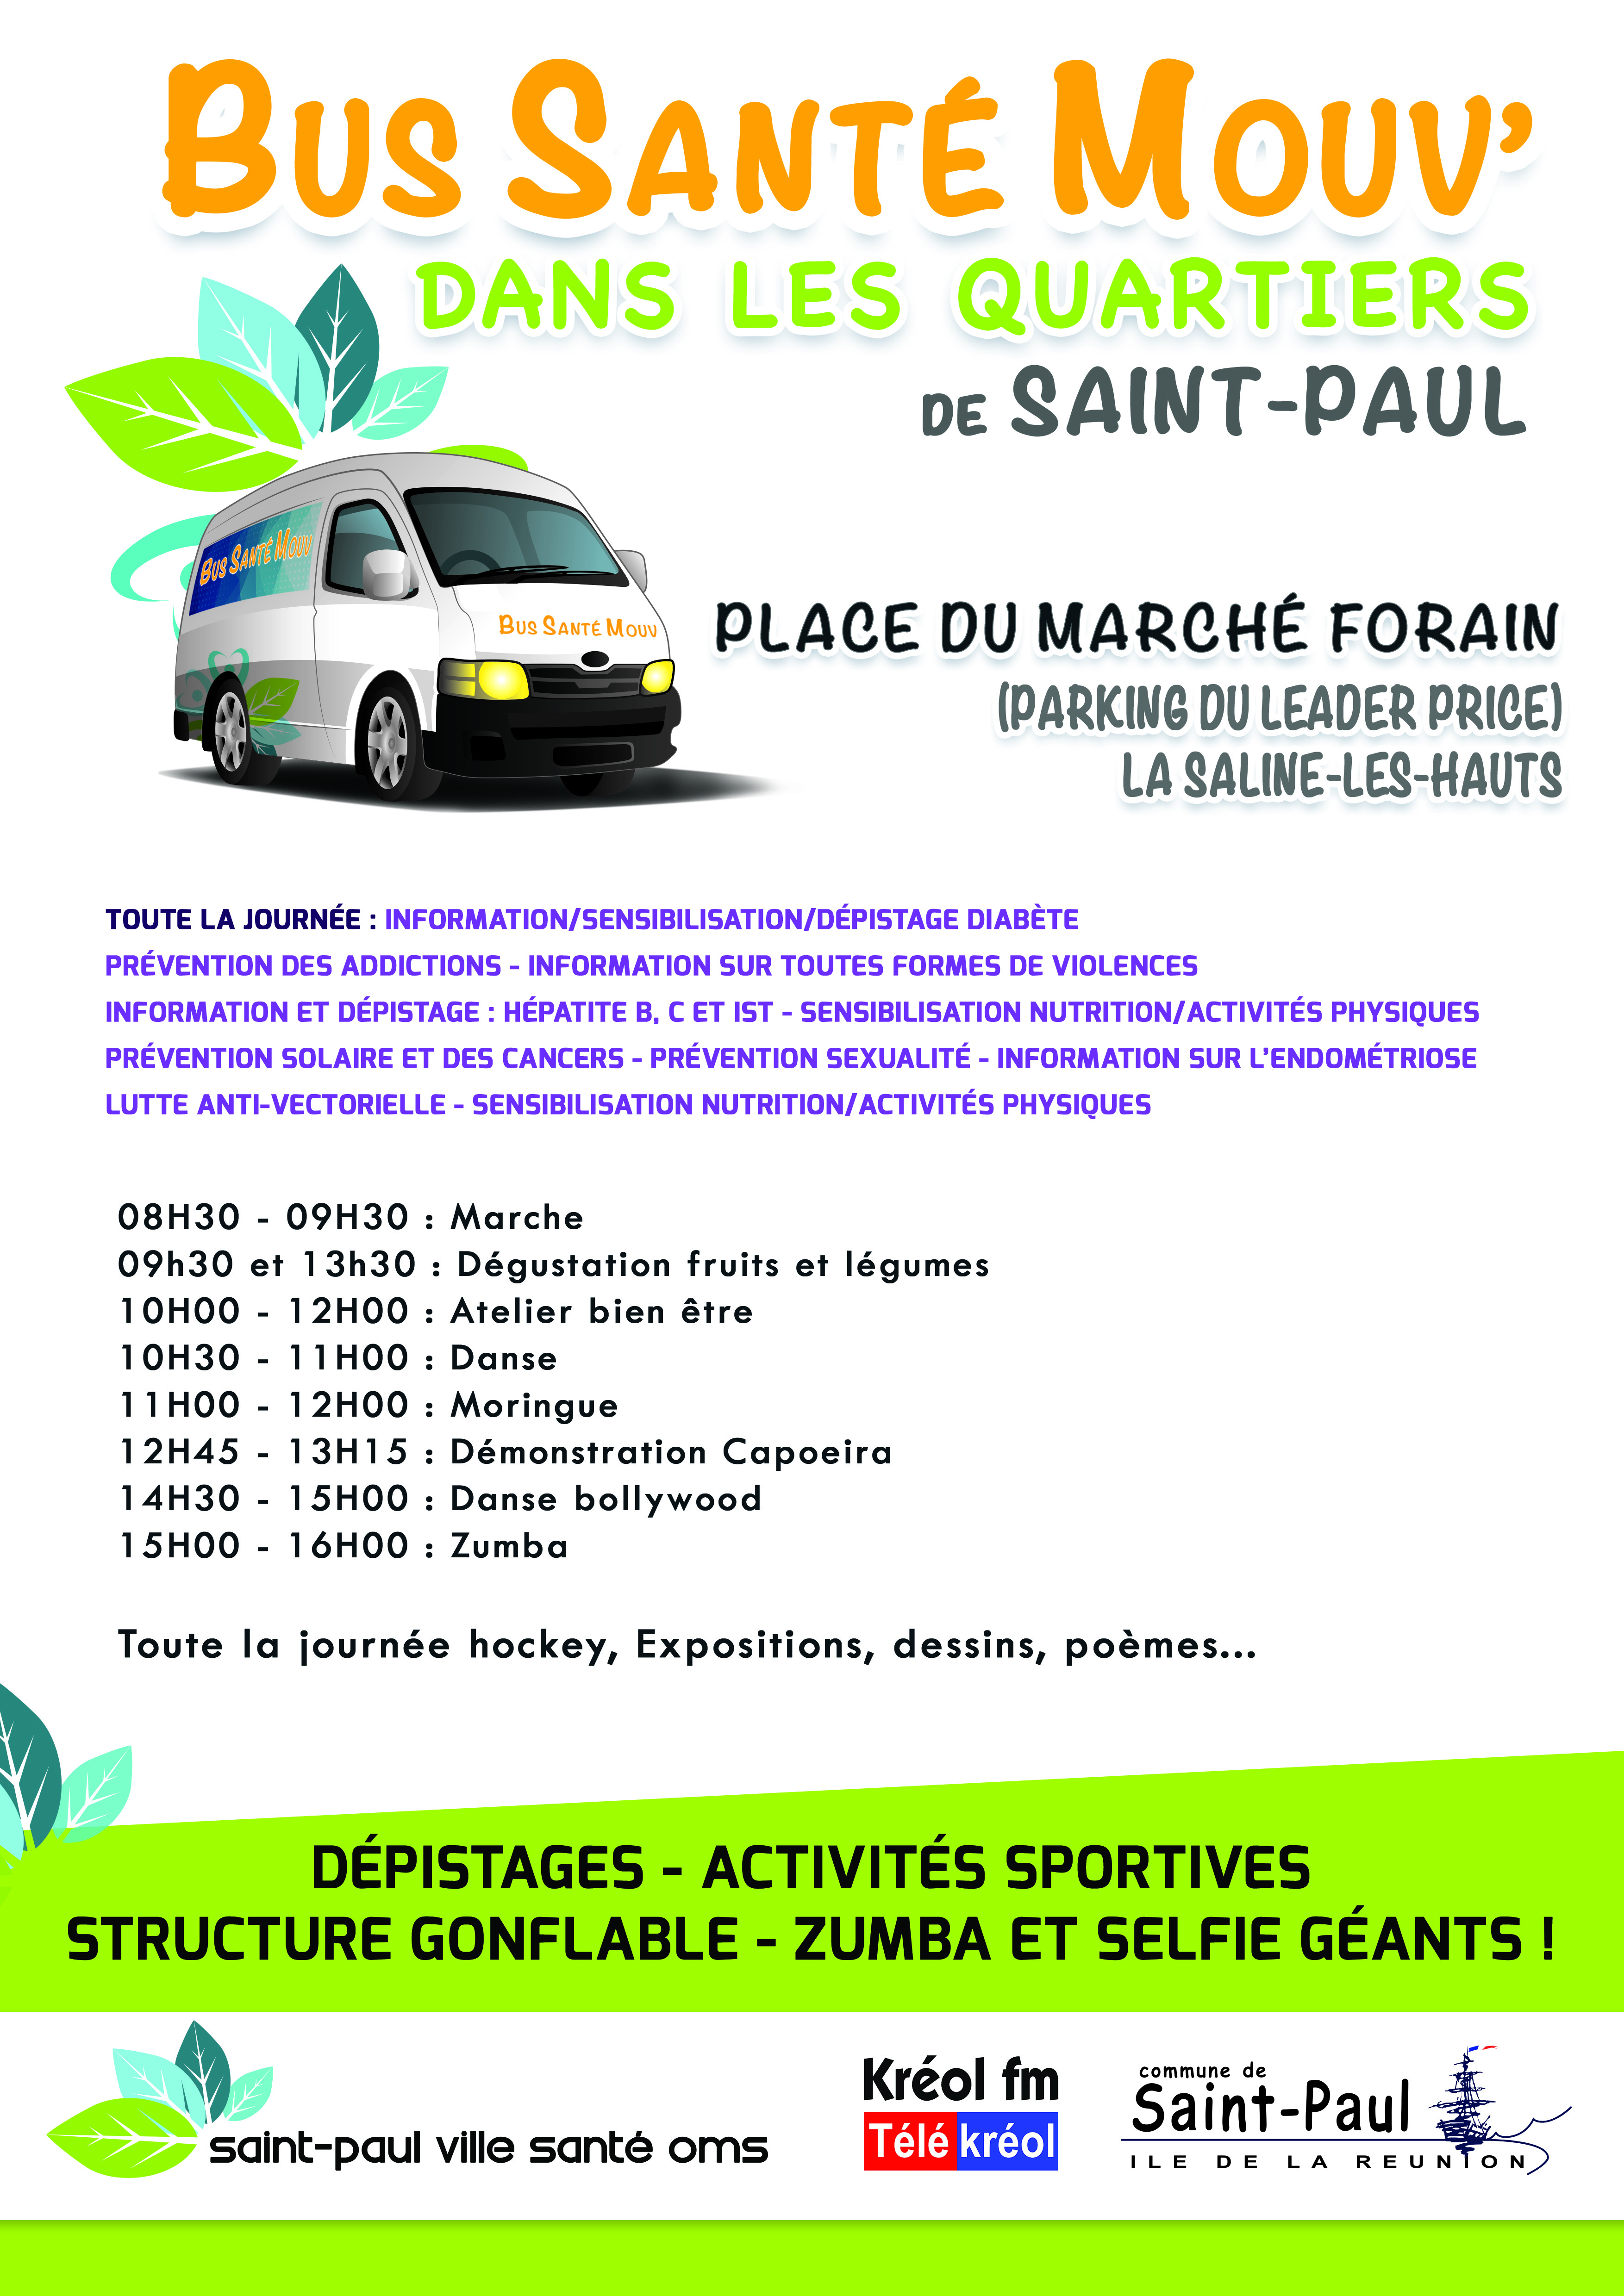 Saint-Paul: Bus Santé Mouv' à la Saline